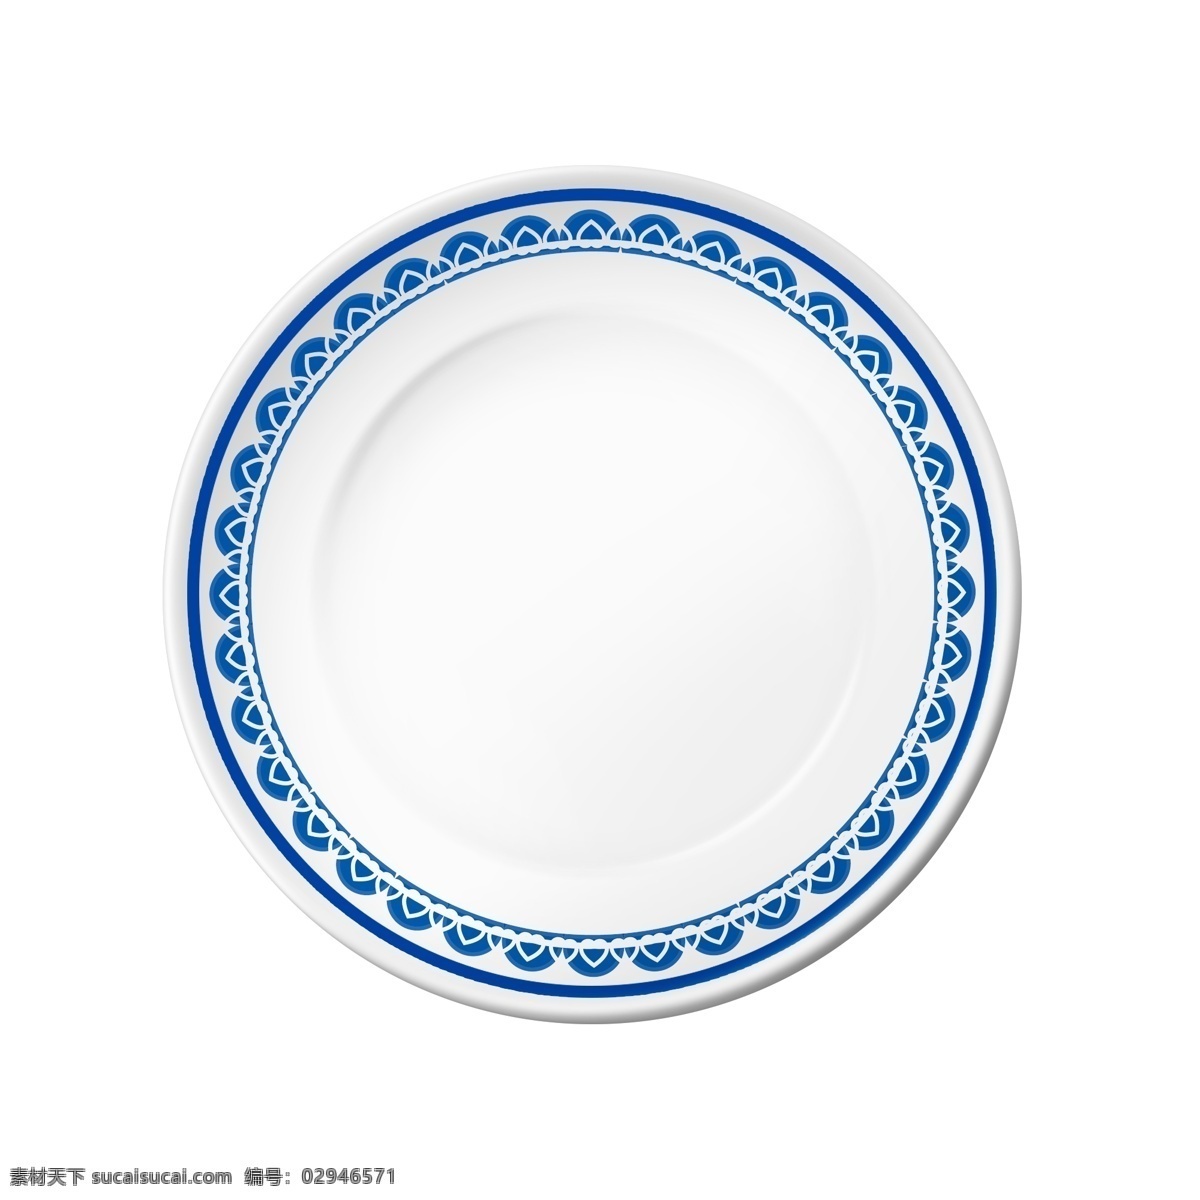 盘子 实物 白色 瓷盘 食物 盘 青花瓷 系列 盘子实物 白色瓷盘 食物盘 青花瓷系列 食品用 蓝色花边 描边装饰 餐具 厨房